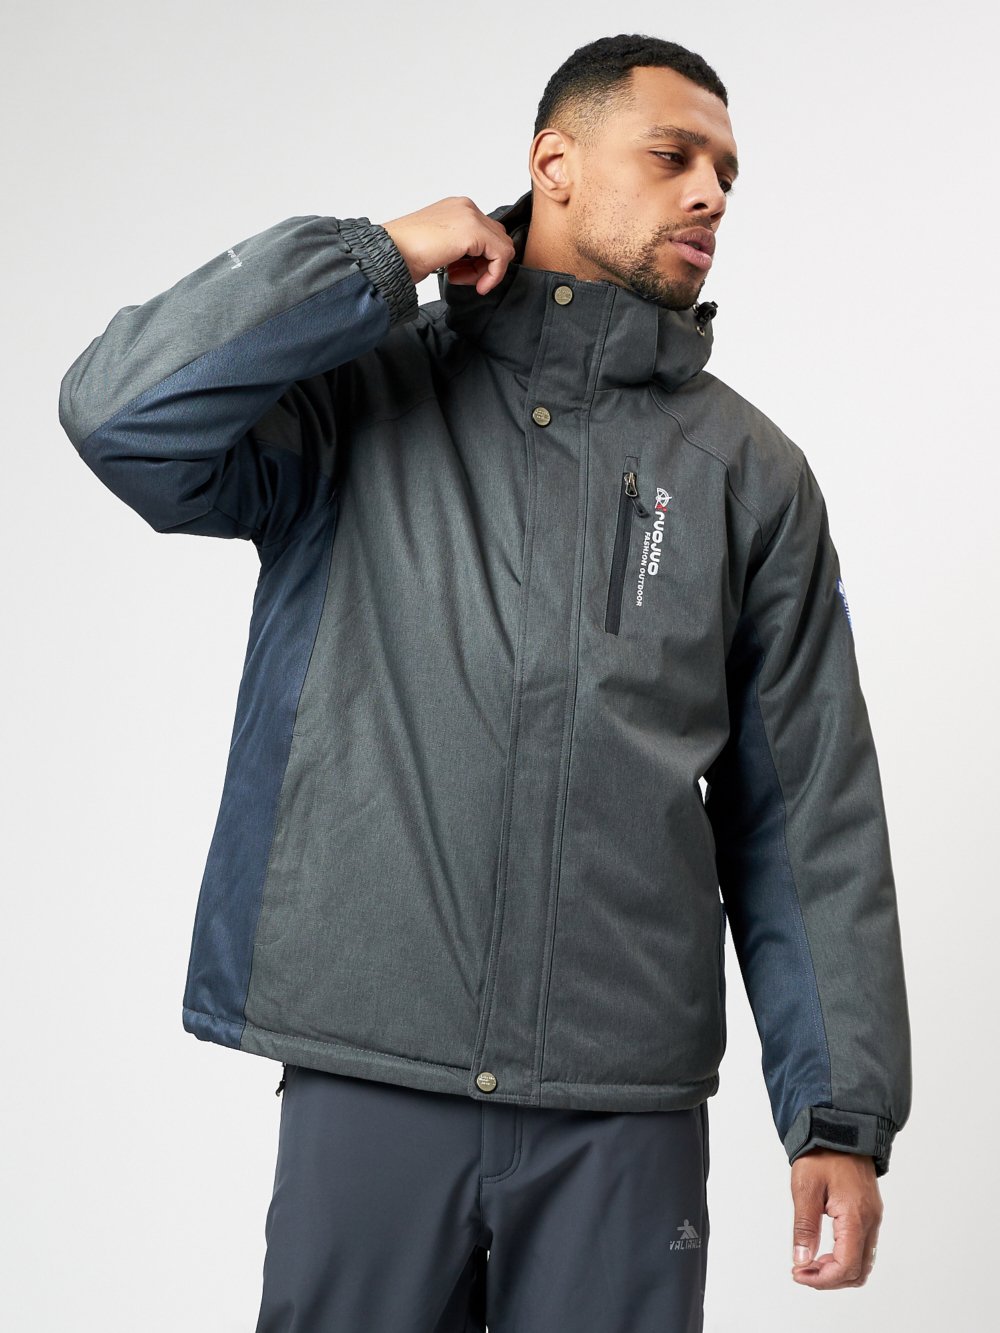 Купить оптом Спортивная куртка мужская зимняя темно-серого цвета 78016TC в Казани